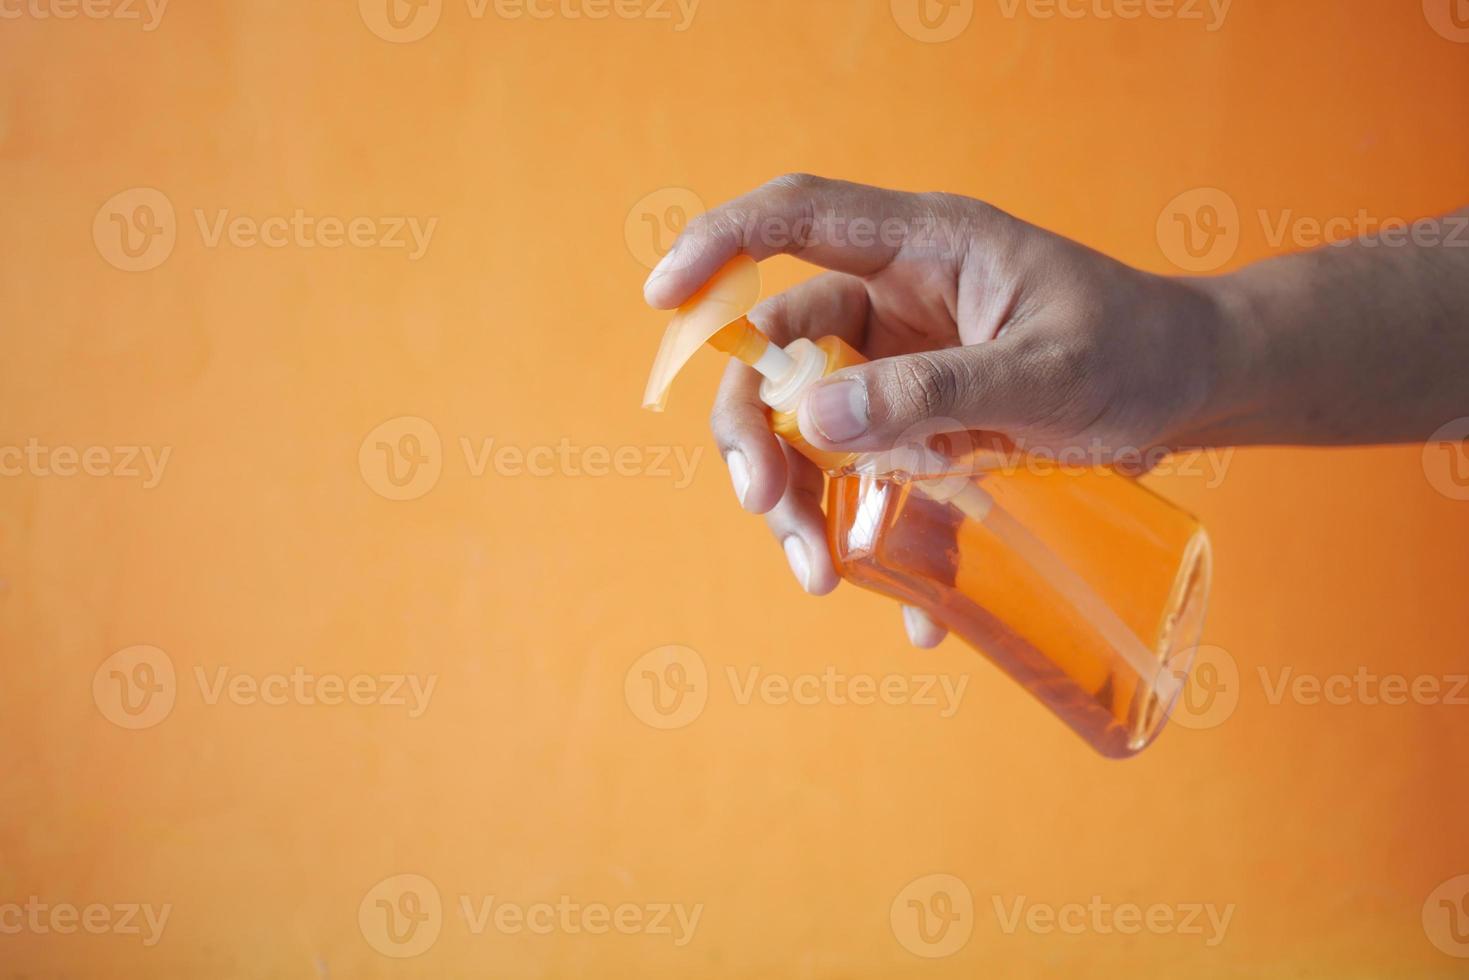 segurando um líquido para lavagem de mãos em um recipiente contra um fundo laranja foto